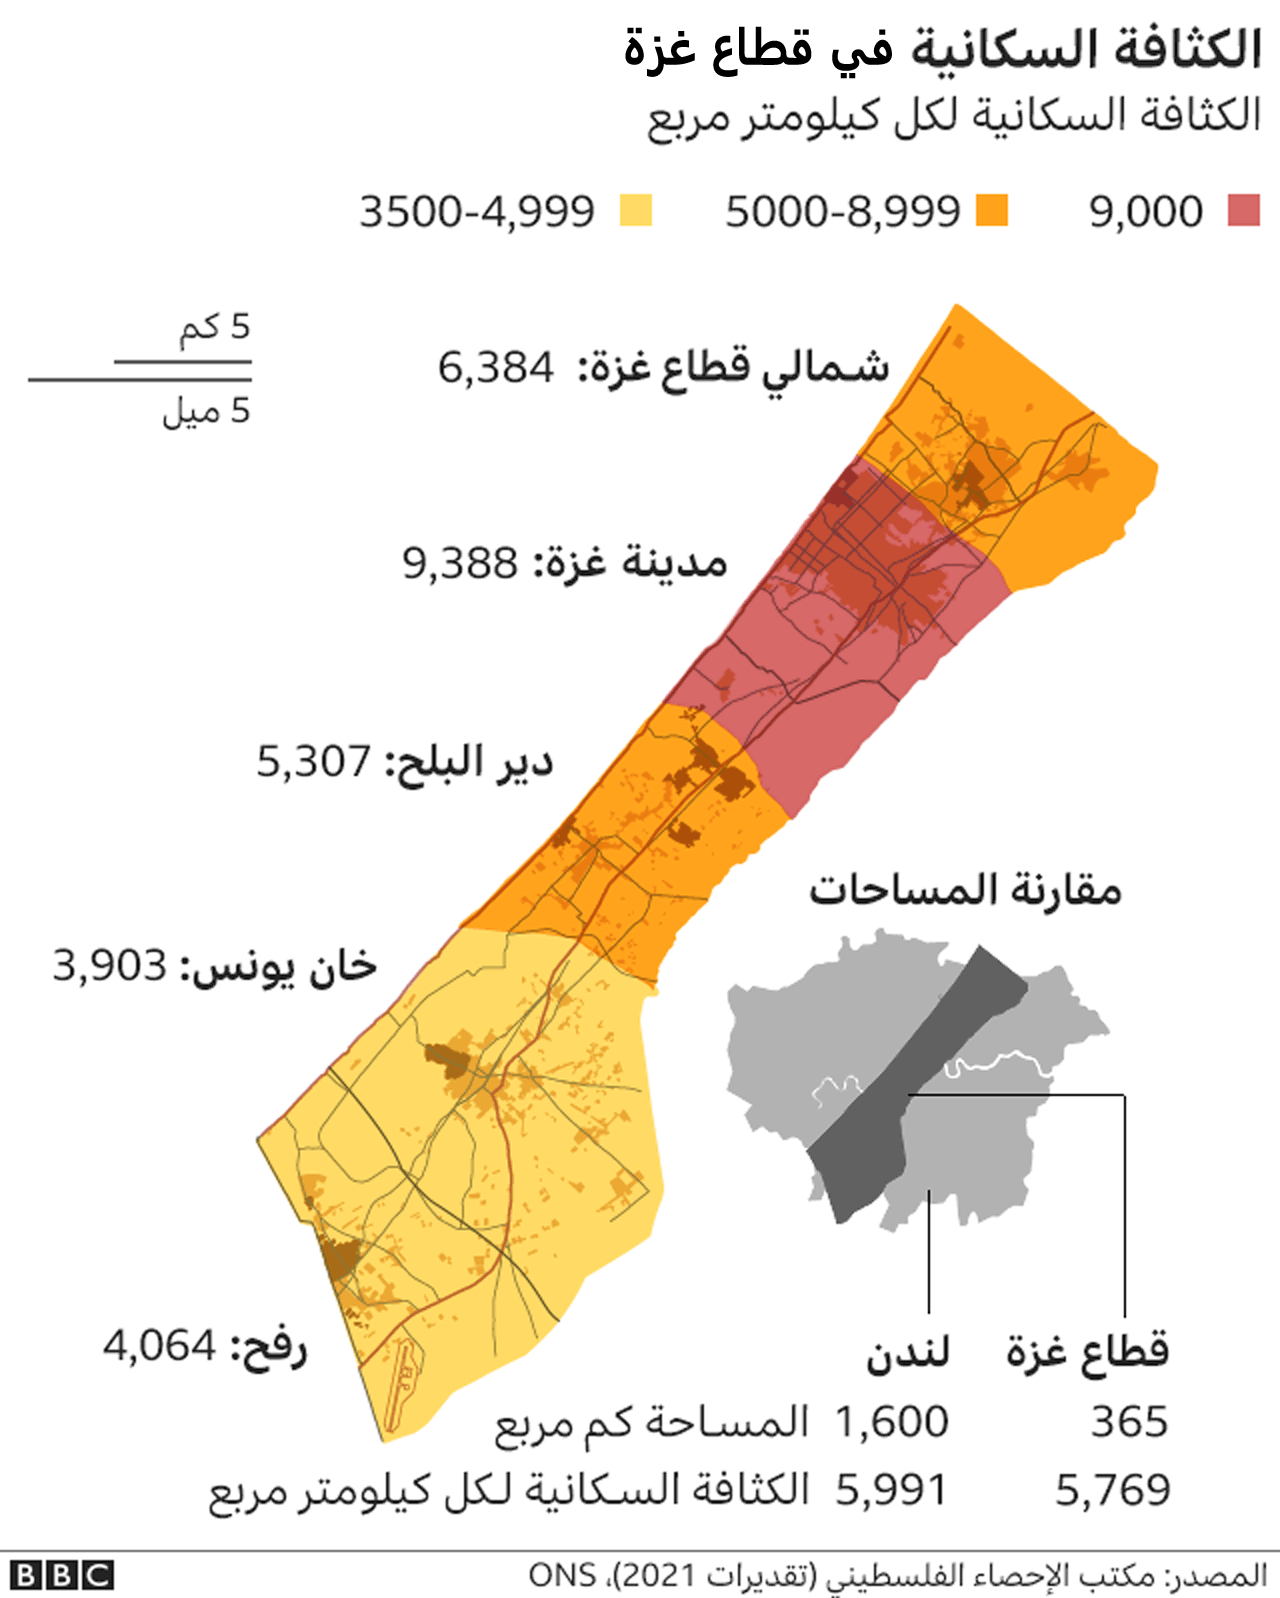 خارطة كثافة السكان في غزة.